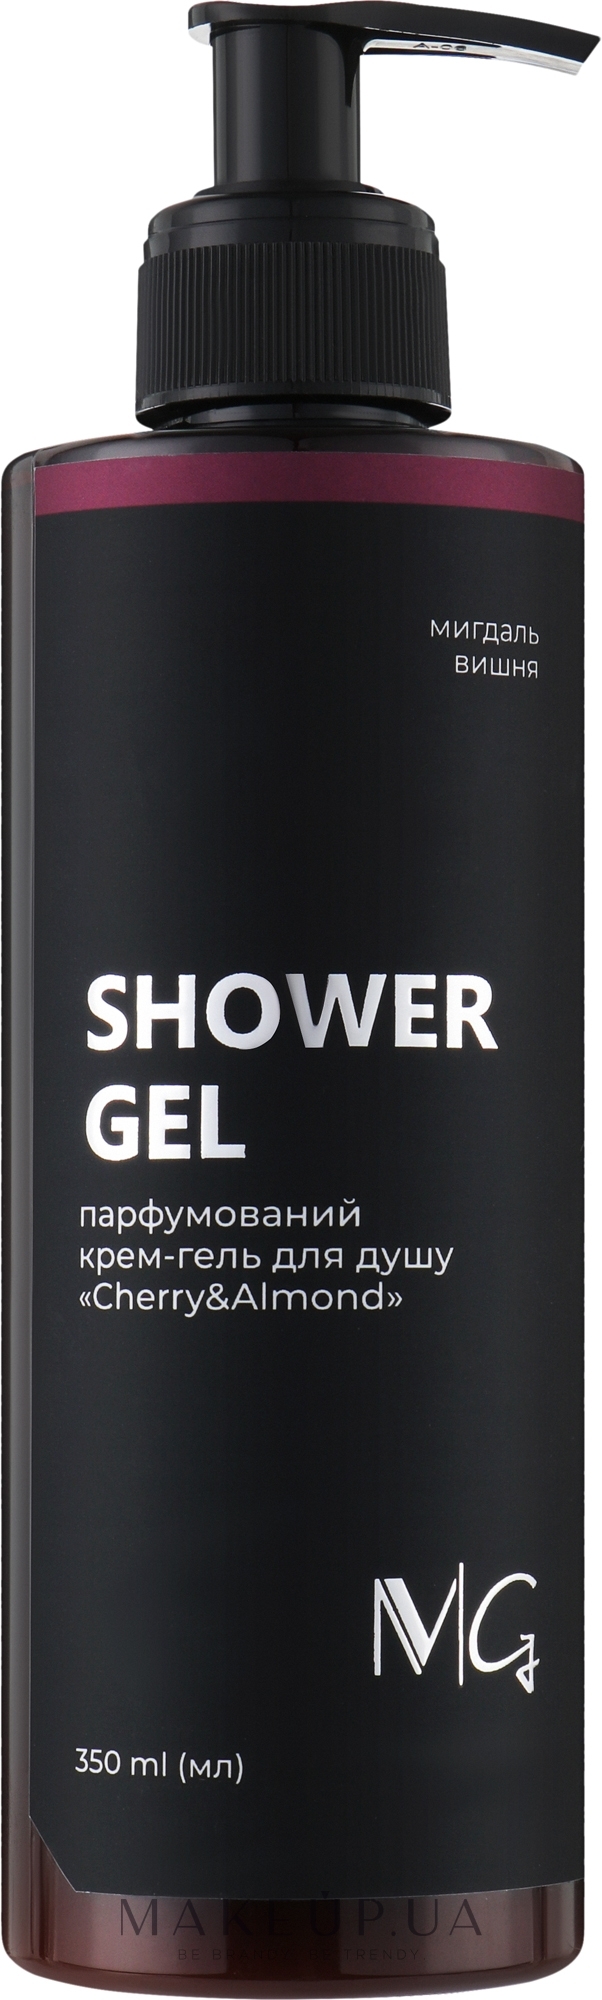 Парфумированный крем-гель для душа "Cherry & Almond" - MG Shower Gel — фото 350ml